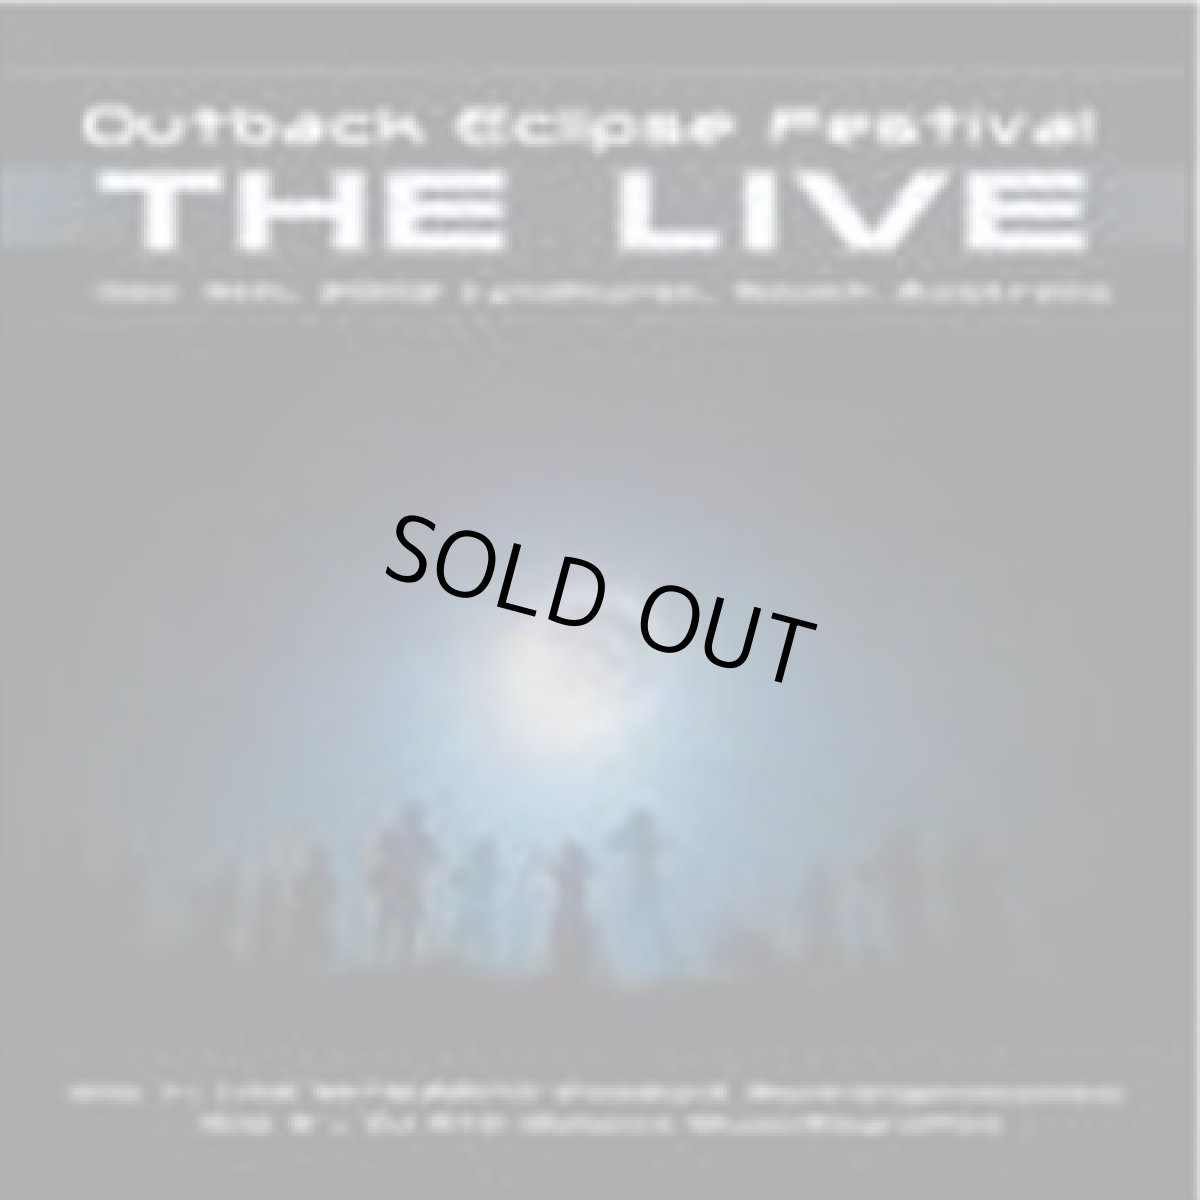 画像1: CD「V.A. / Outback Eclipse Festival - THE LIVE」2枚組【フルオン・PSYトランス】 (1)